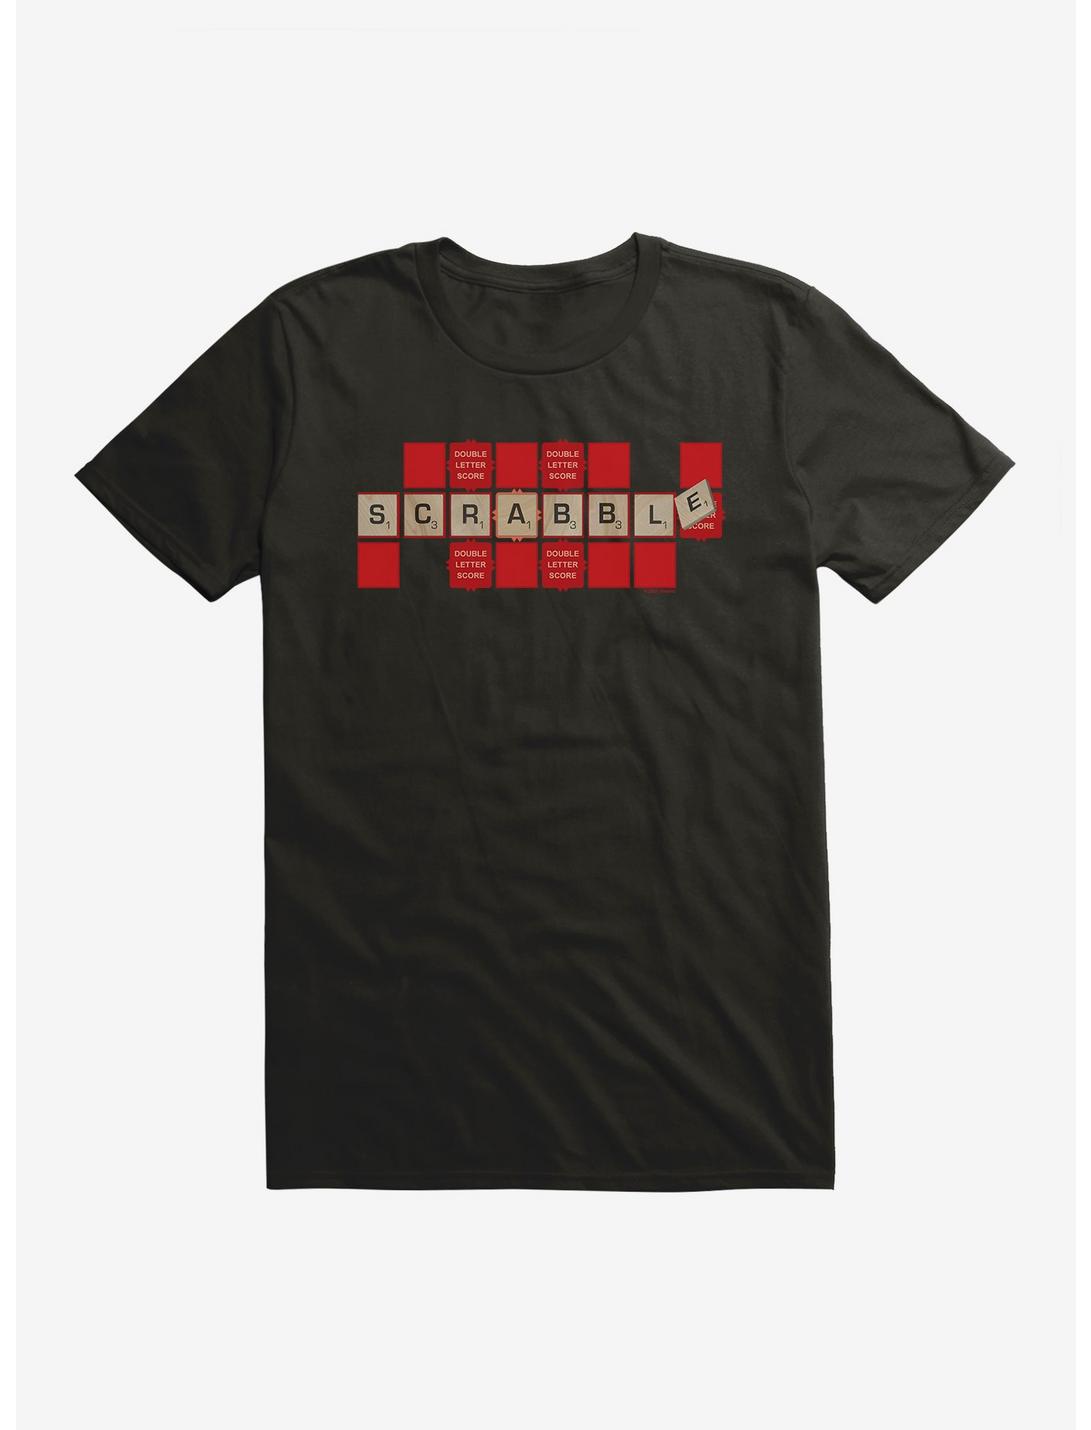 Scrabble Double Letter Score T-Shirt, , hi-res